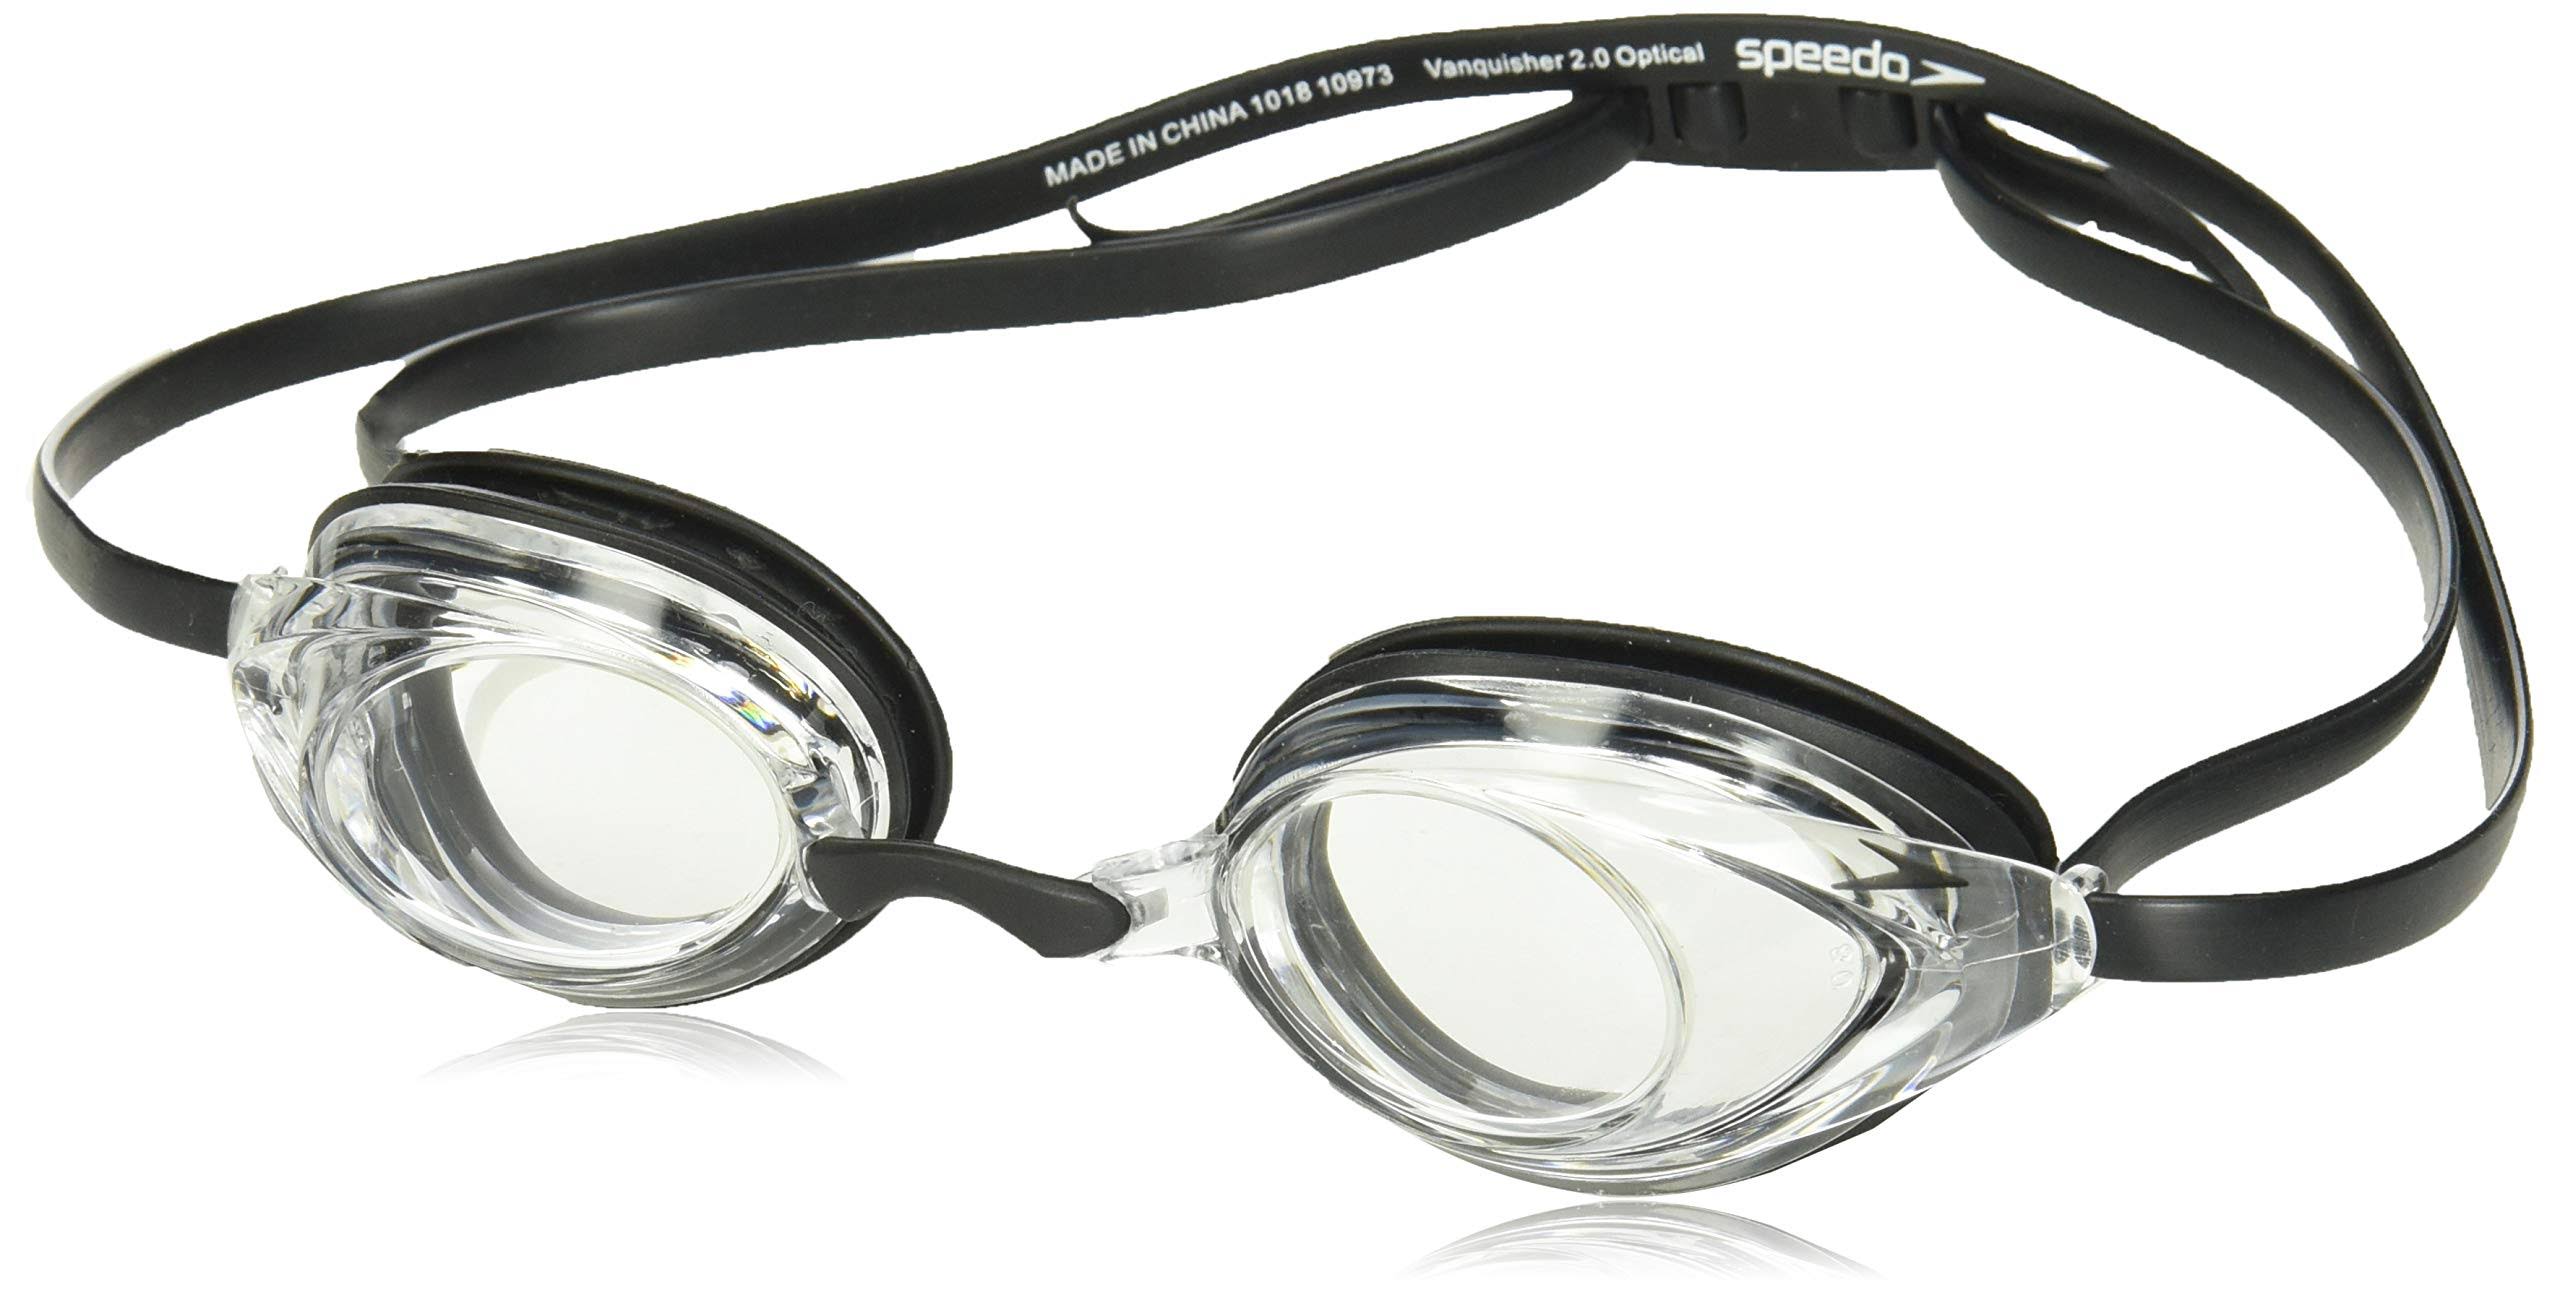 Speedo Vanquisher 2.0 Optical